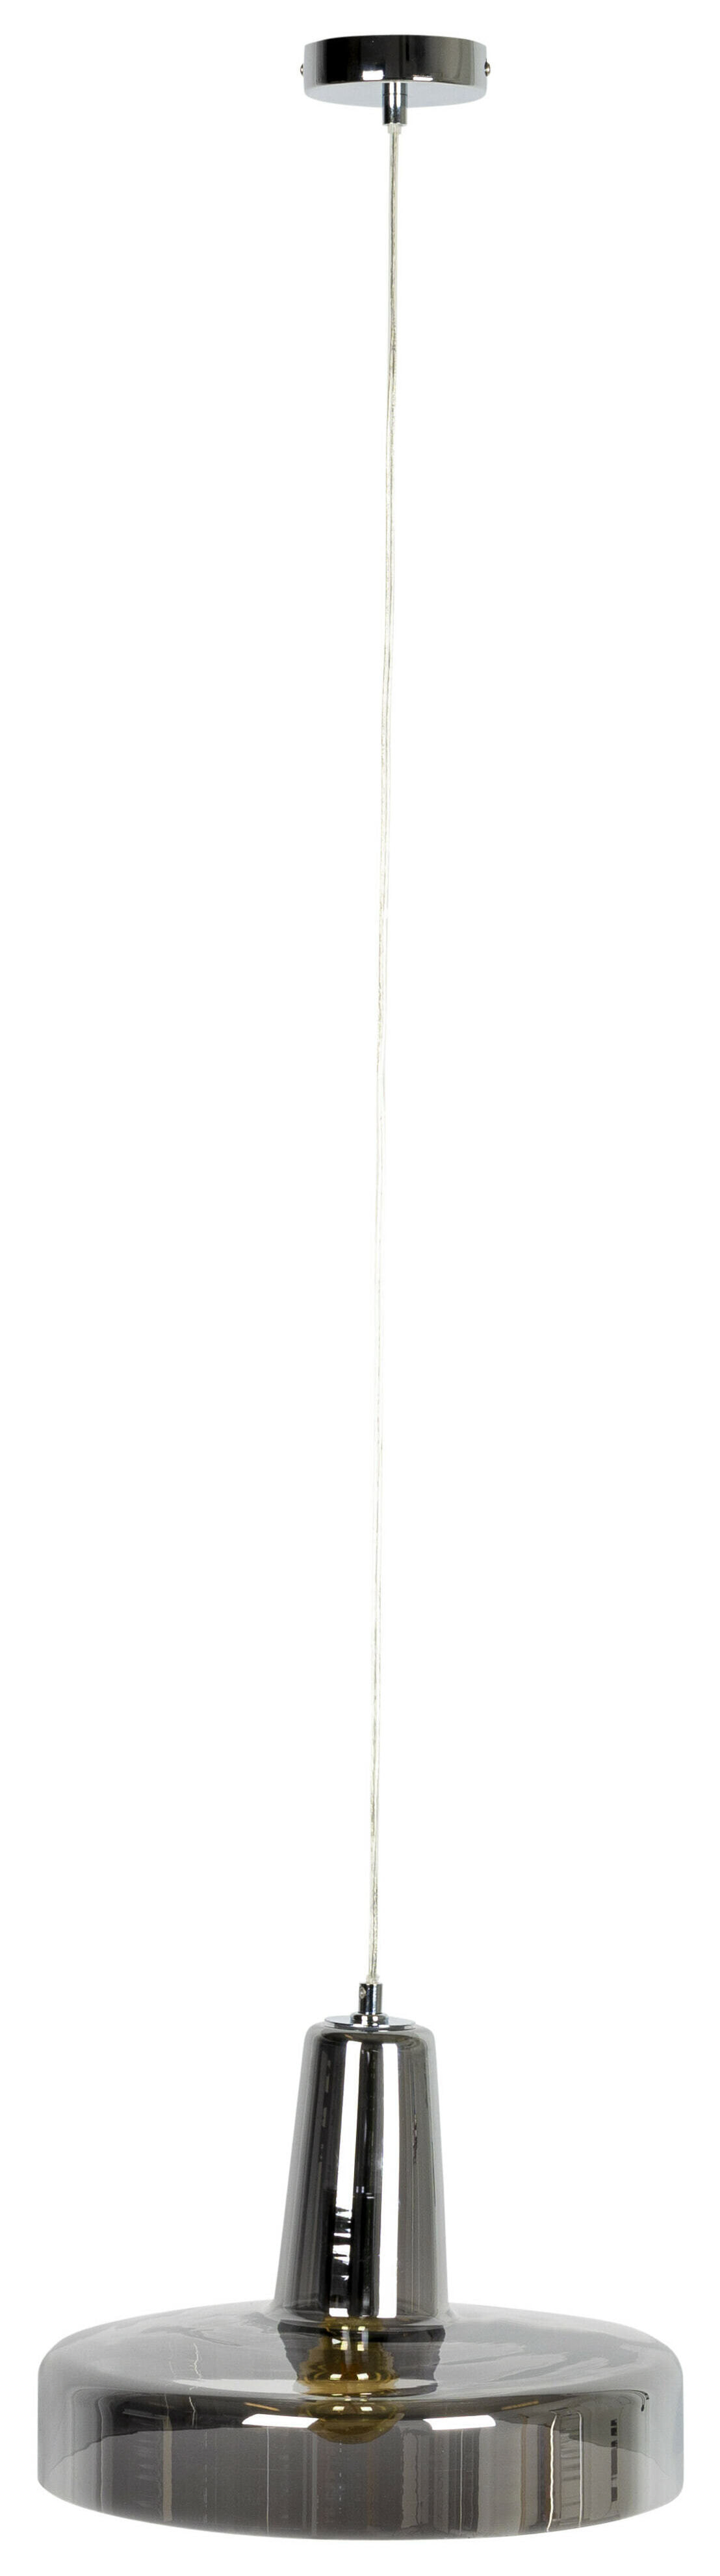 ZILT Hanglamp Ezequiel Glas, 35cm